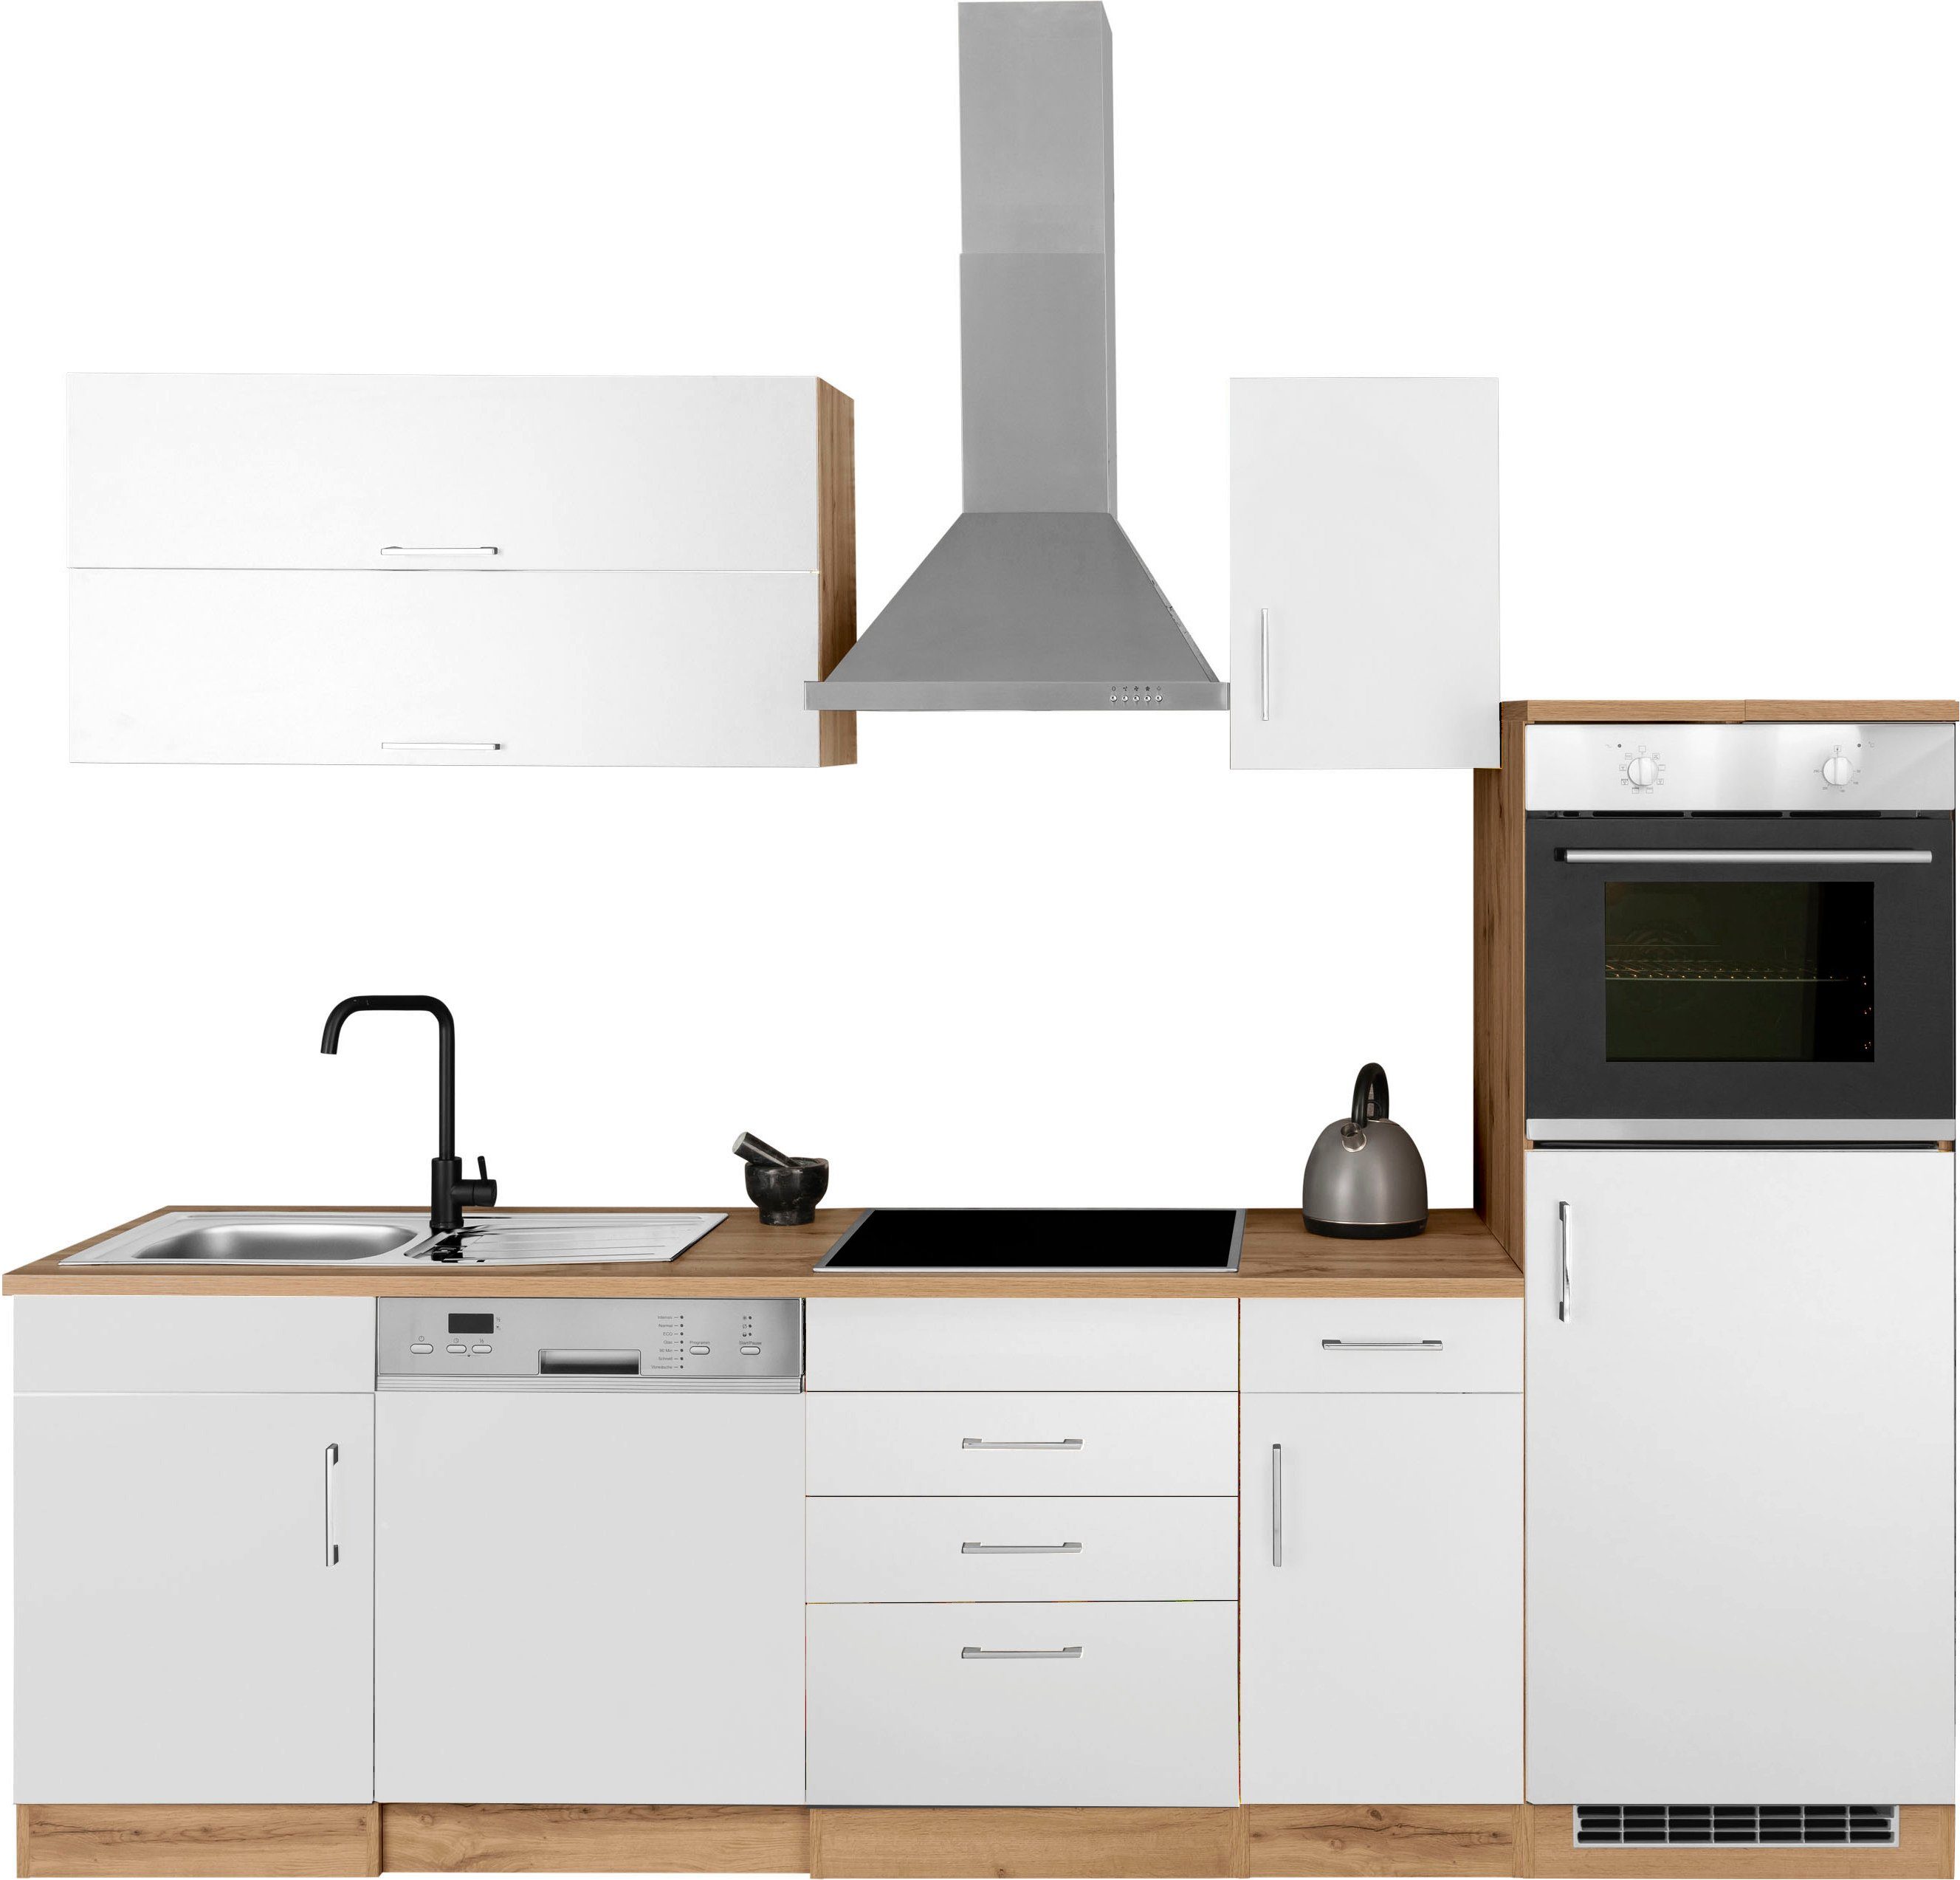 HELD MÖBEL Küchenzeile Colmar, mit E-Geräten, Breite 270 cm